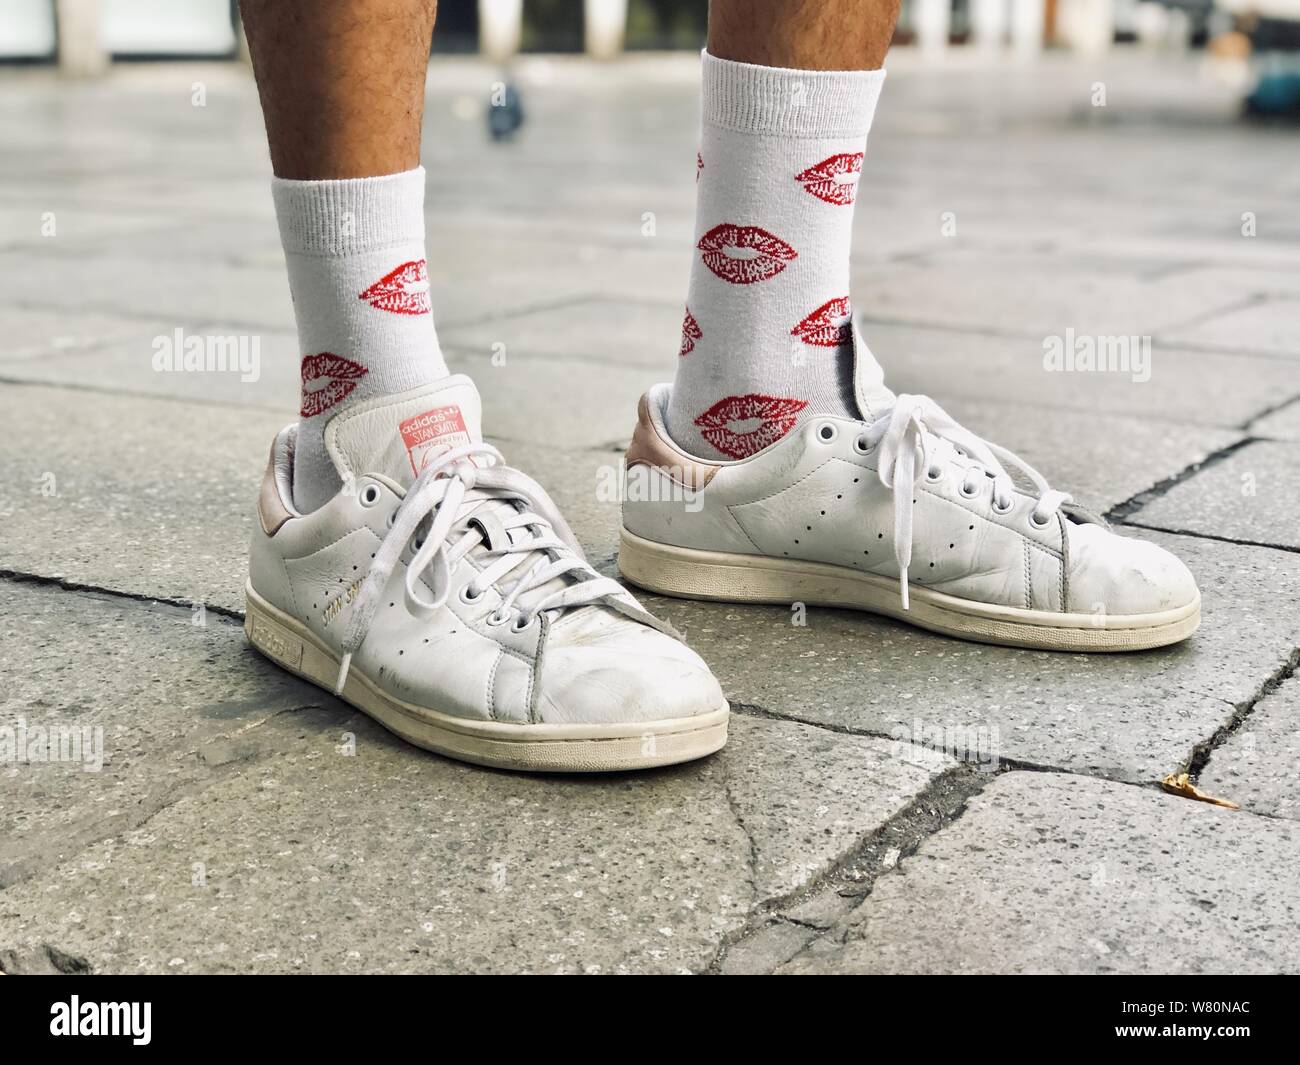 sneakers white socks